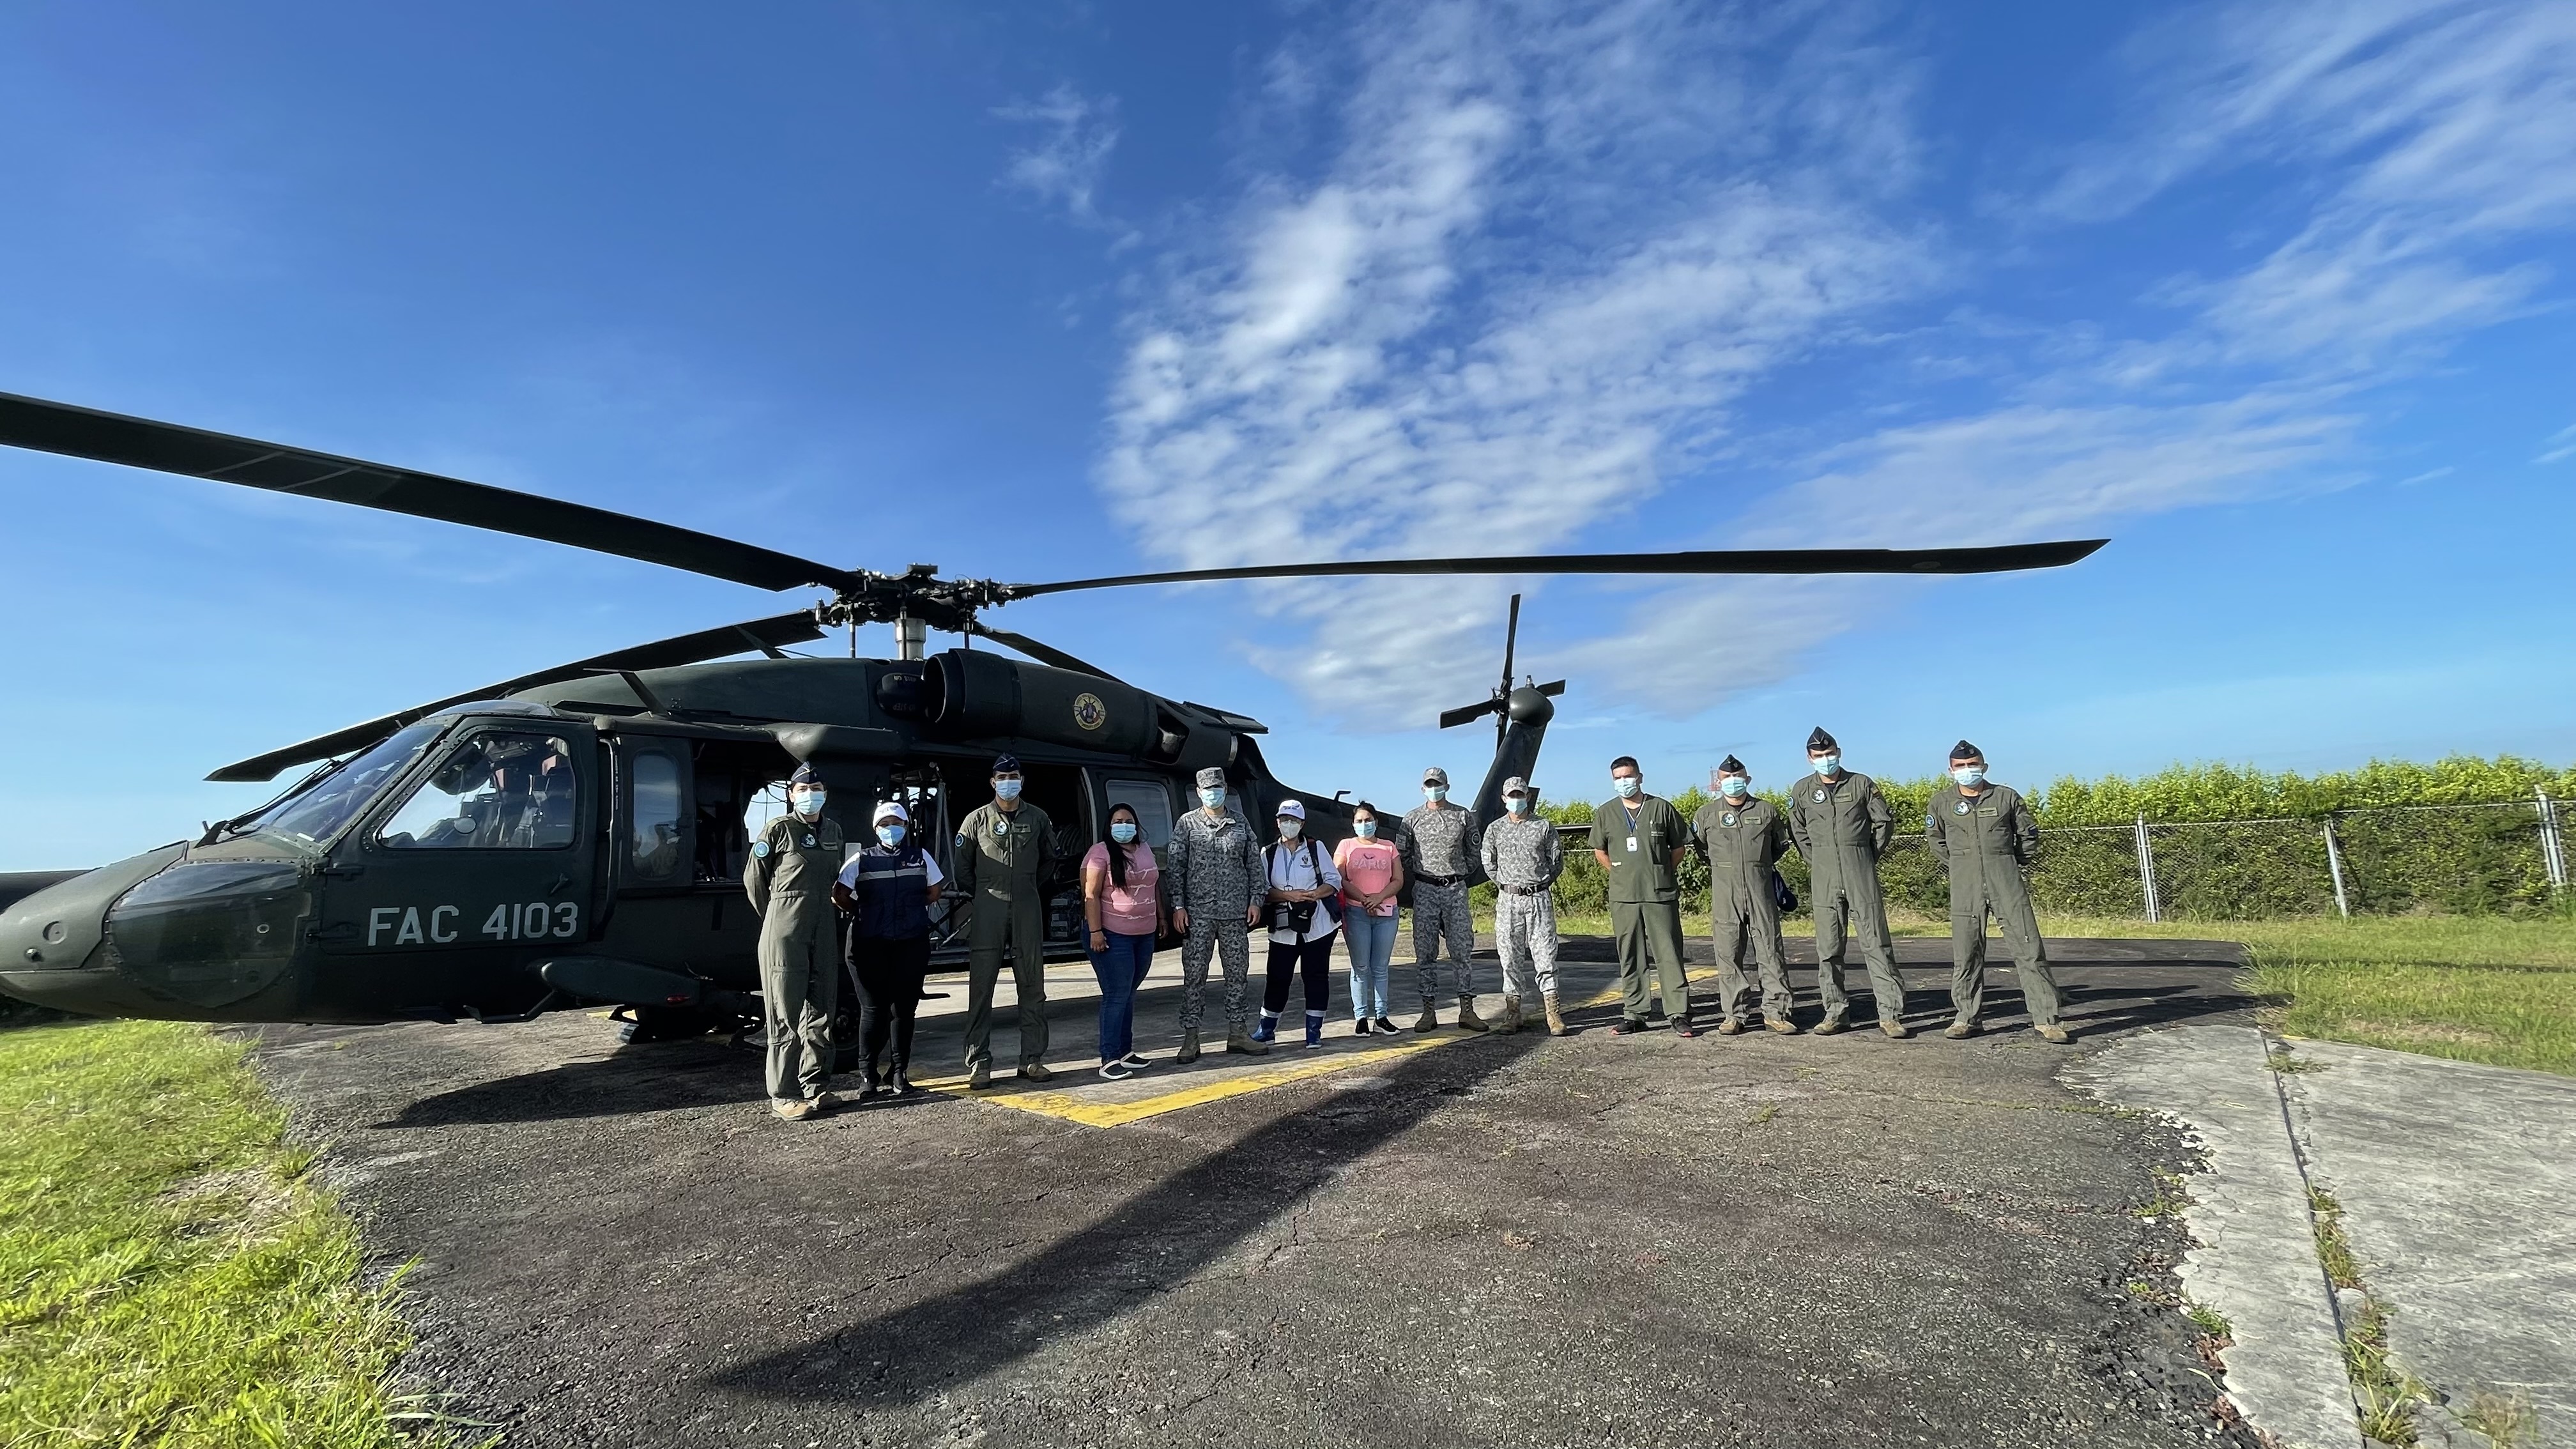 Equipo médico es transportado por su Fuerza Aérea al resguardo Indígena de Caño Mochuelo